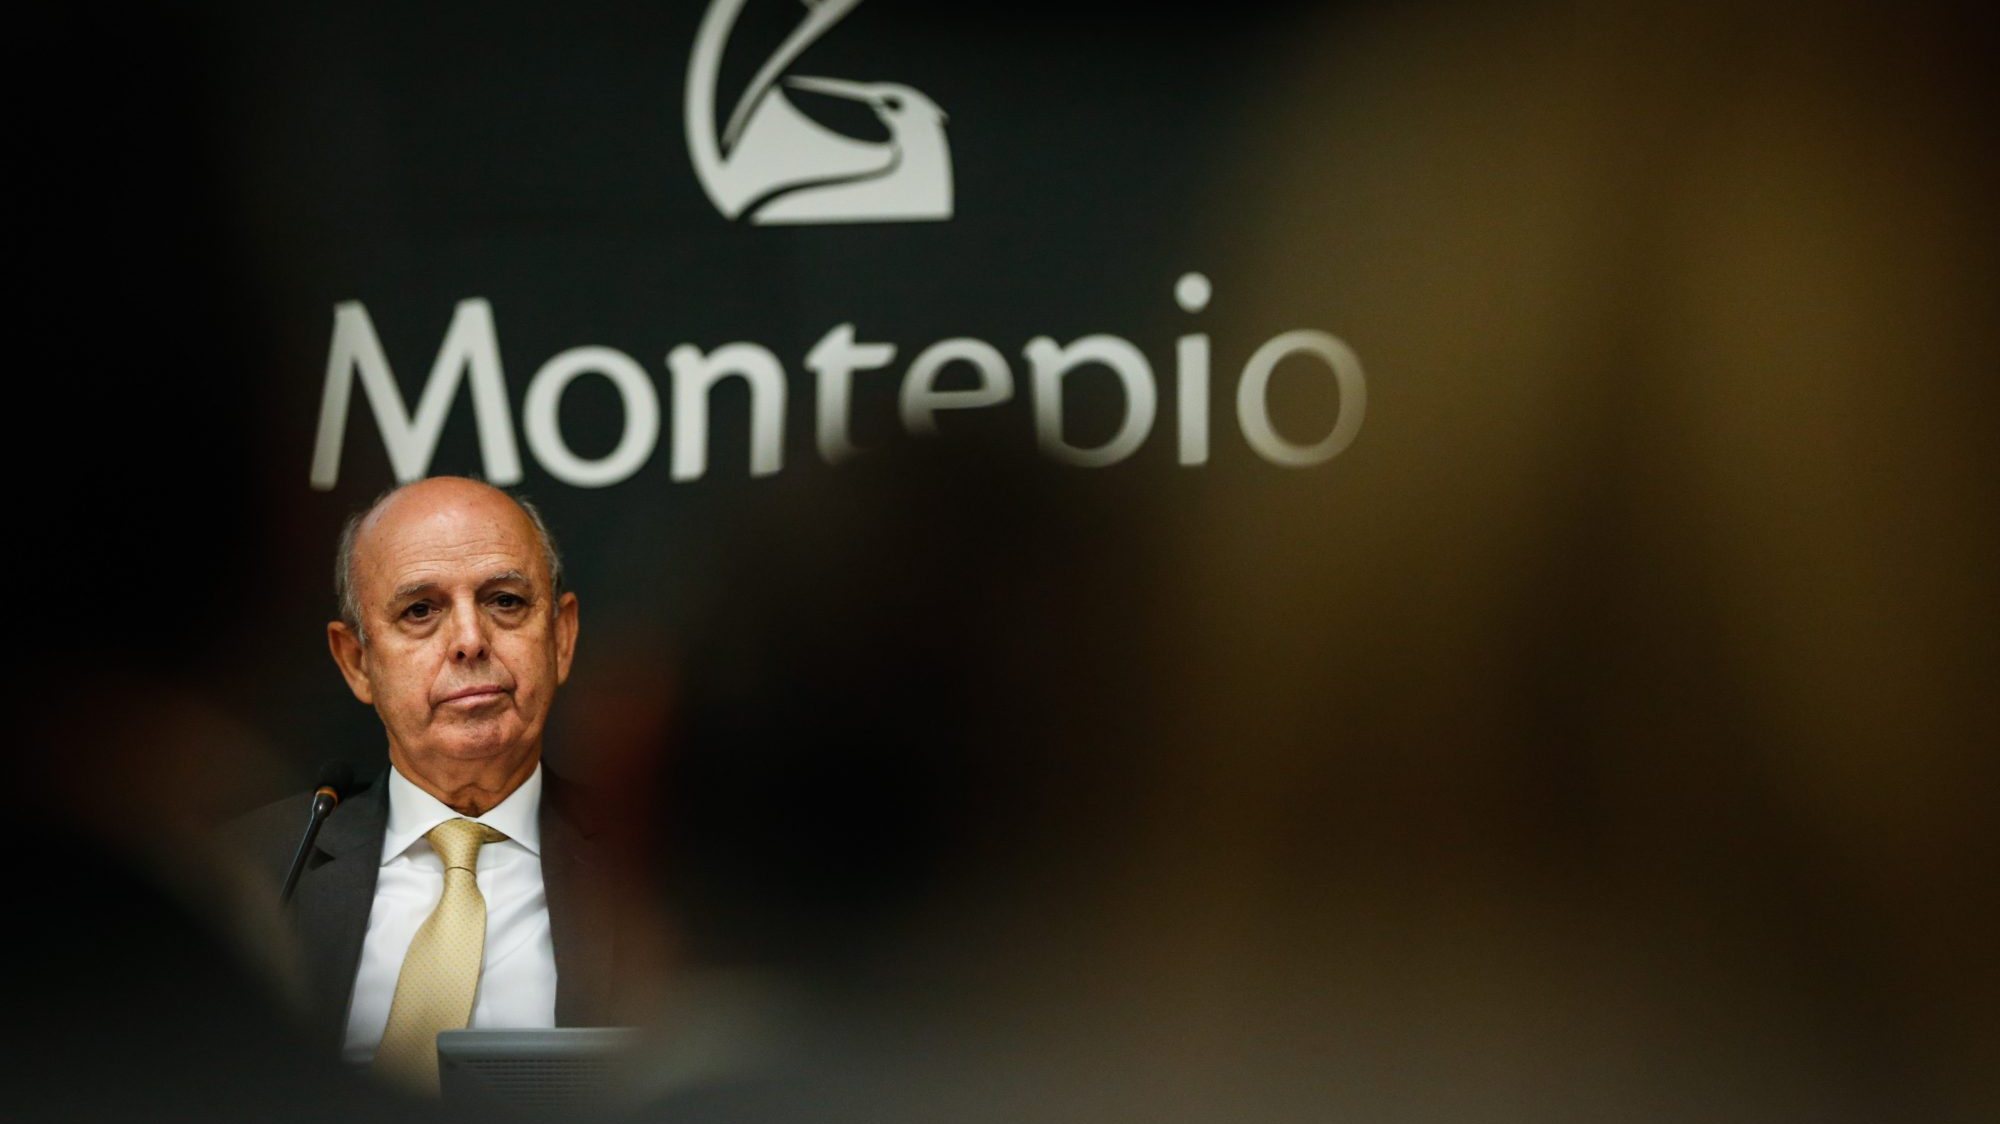 O antigo presidente do Montepio António Tomás Correia viu a coima reduzida de 1,4 milhões de euros para 375.000 euros